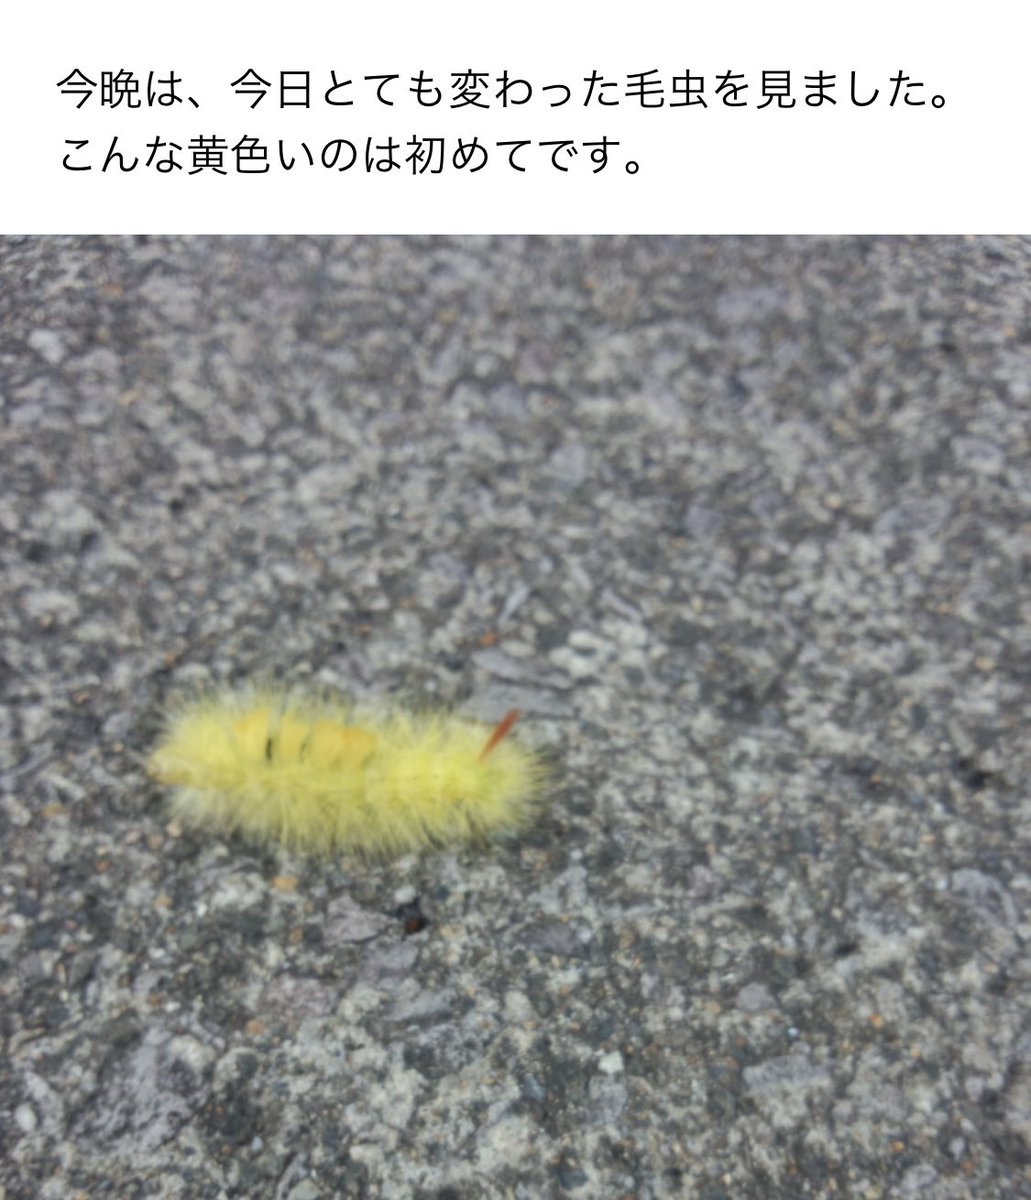 Sachi 大野剣友会 何でも屋 در توییتر うちの母からのメール 60年以上生きてきて 初めて見た黄色い毛虫をわざわざ写真に撮って送ってきた リンゴドクガの幼虫と思われるので 成虫の白いモスラのような蛾の写真を送ってあげたが 返事はない 毛虫だけで満足だった